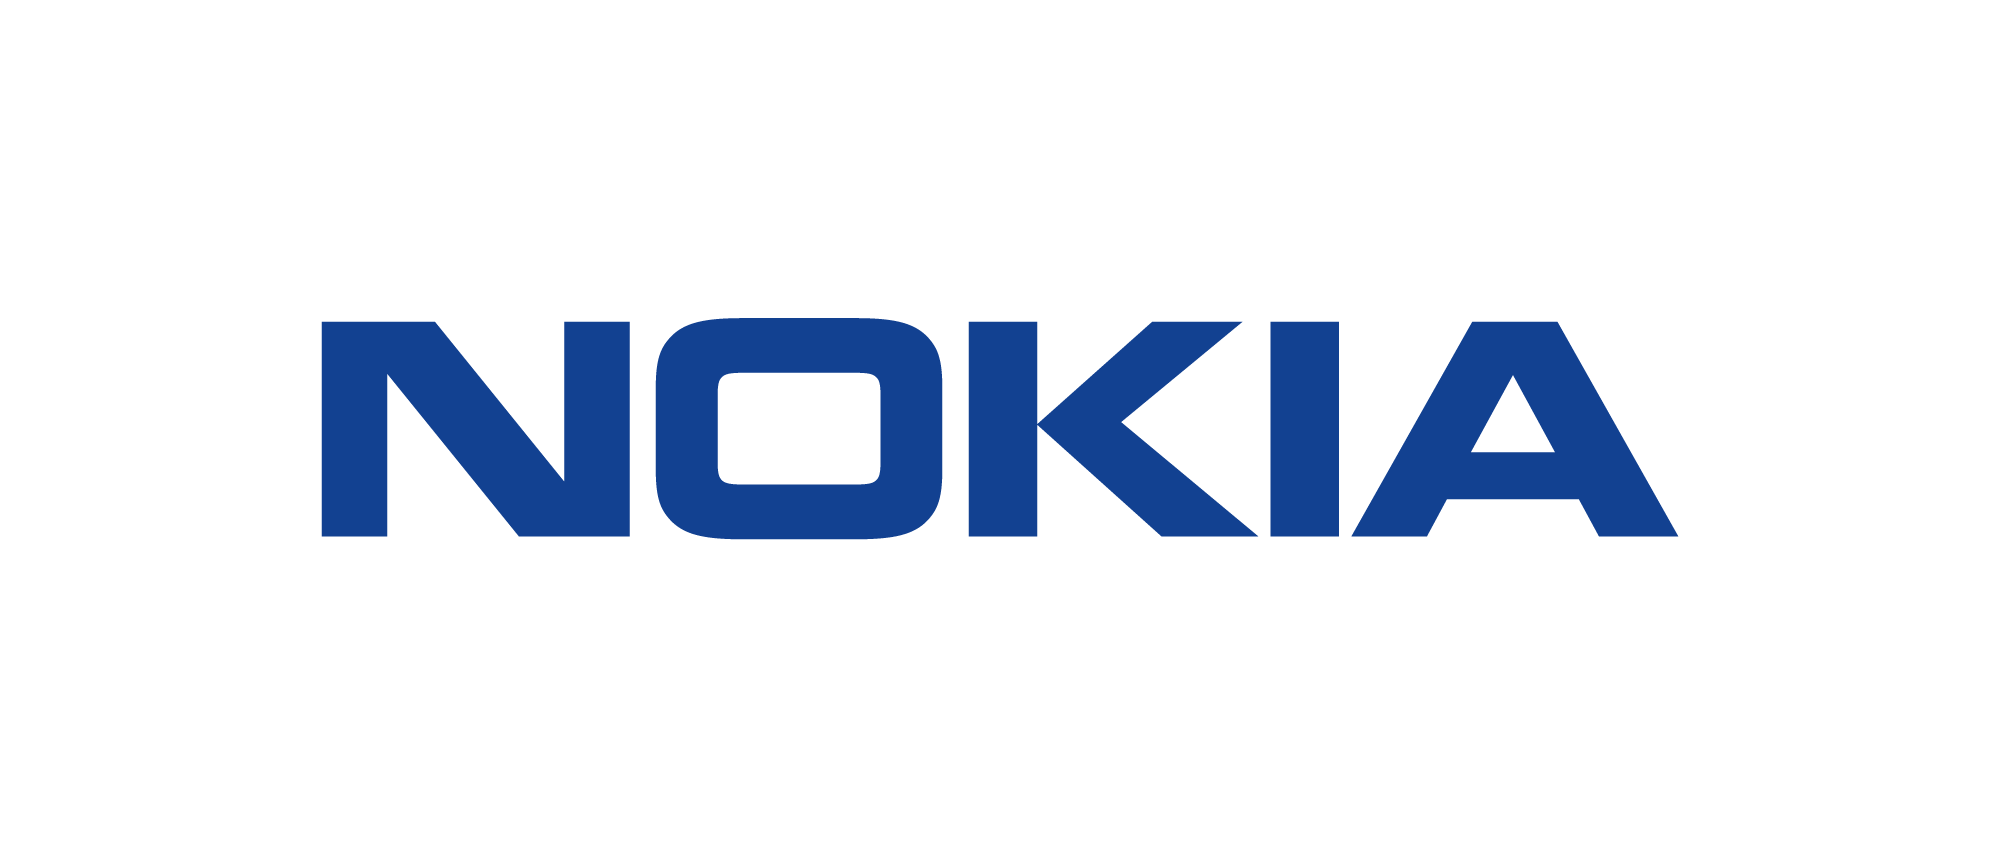 Nokia_logo_blue_RGB.png